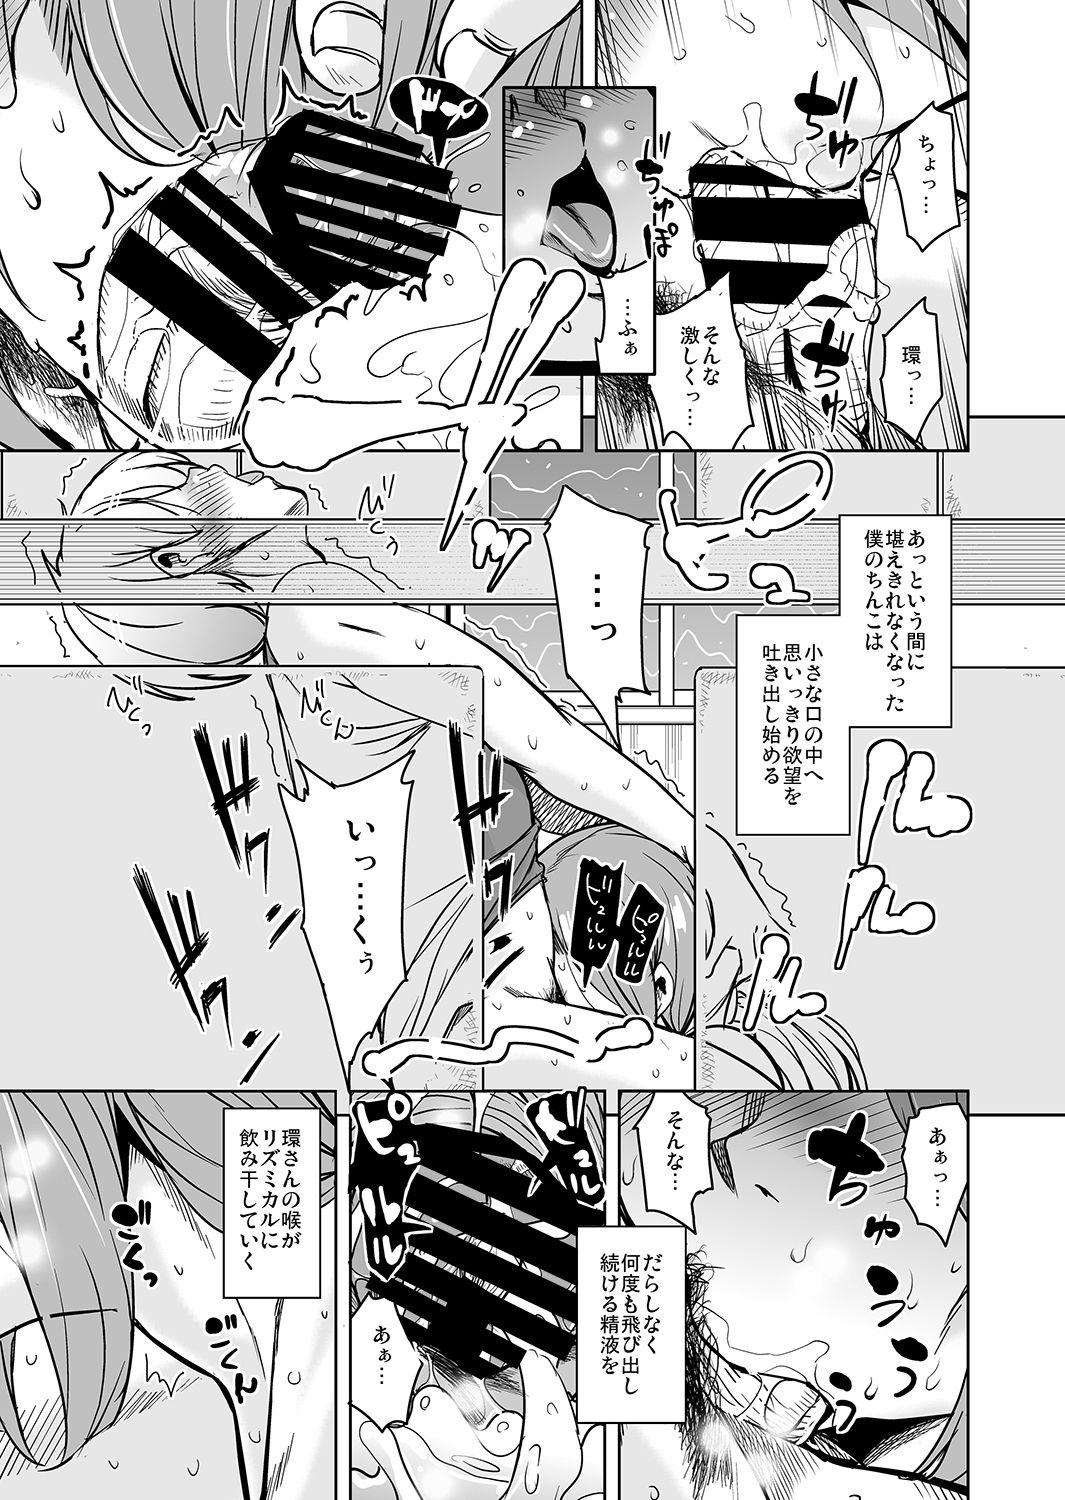 Price Ritou e Tenkou Shitara Host Family ga Dosukebe de Komaru 6 - Original Culito - Page 11